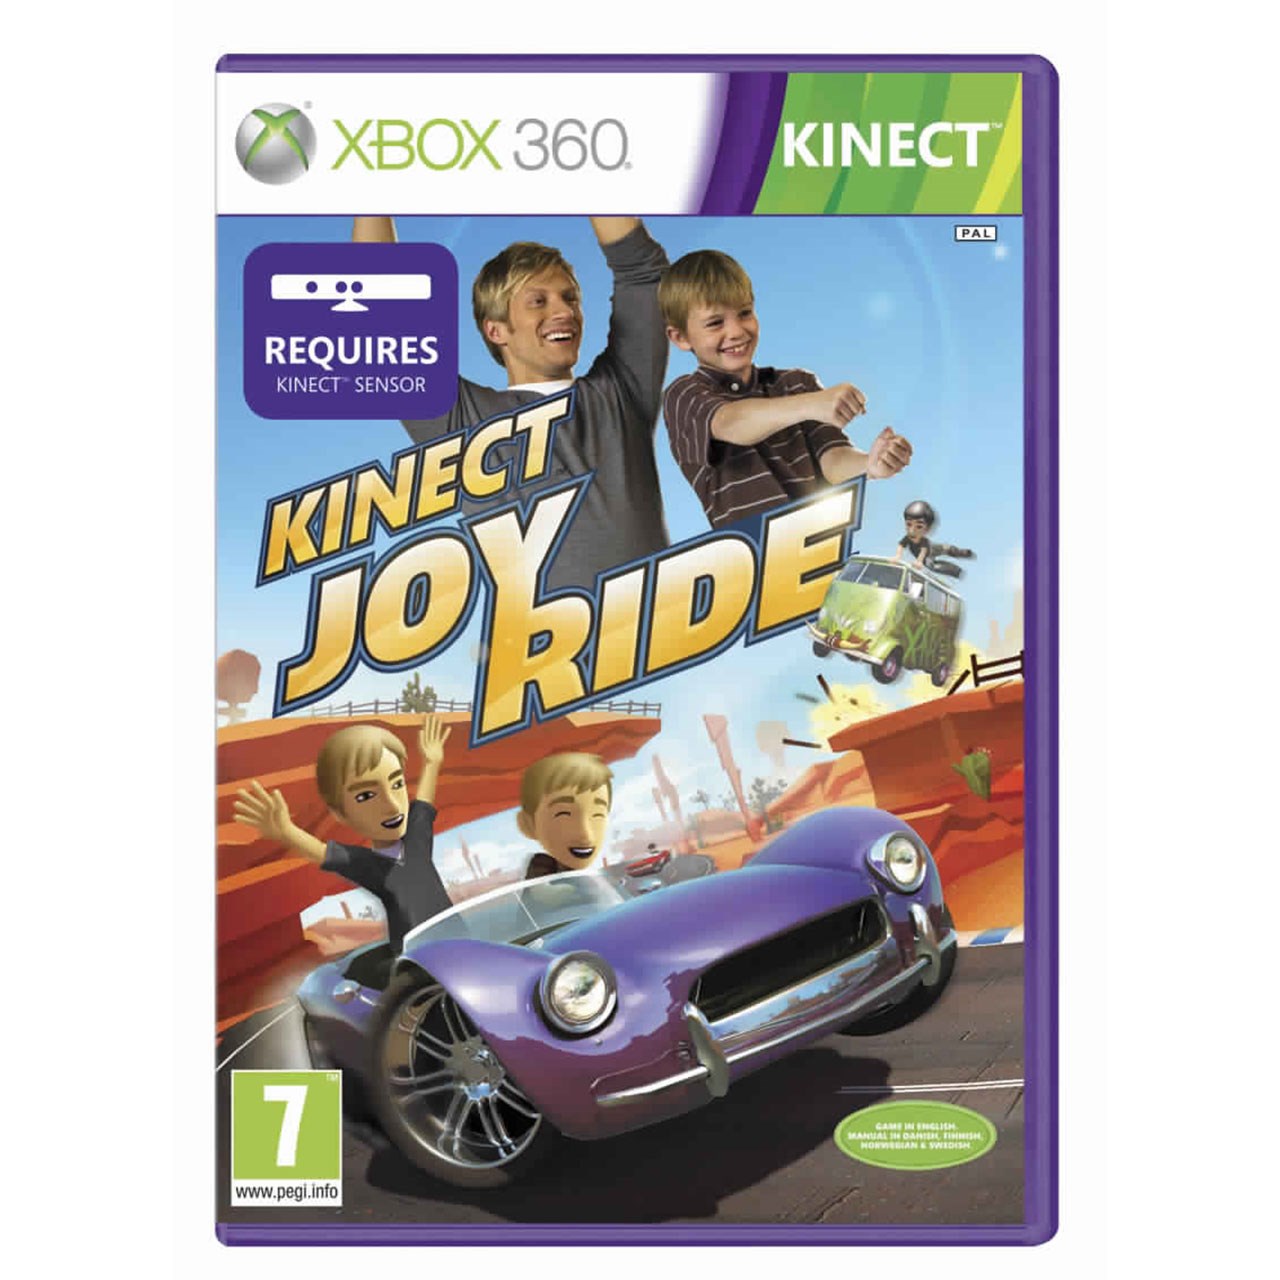 بازی Kinect Joy Ride مخصوص XBox 360